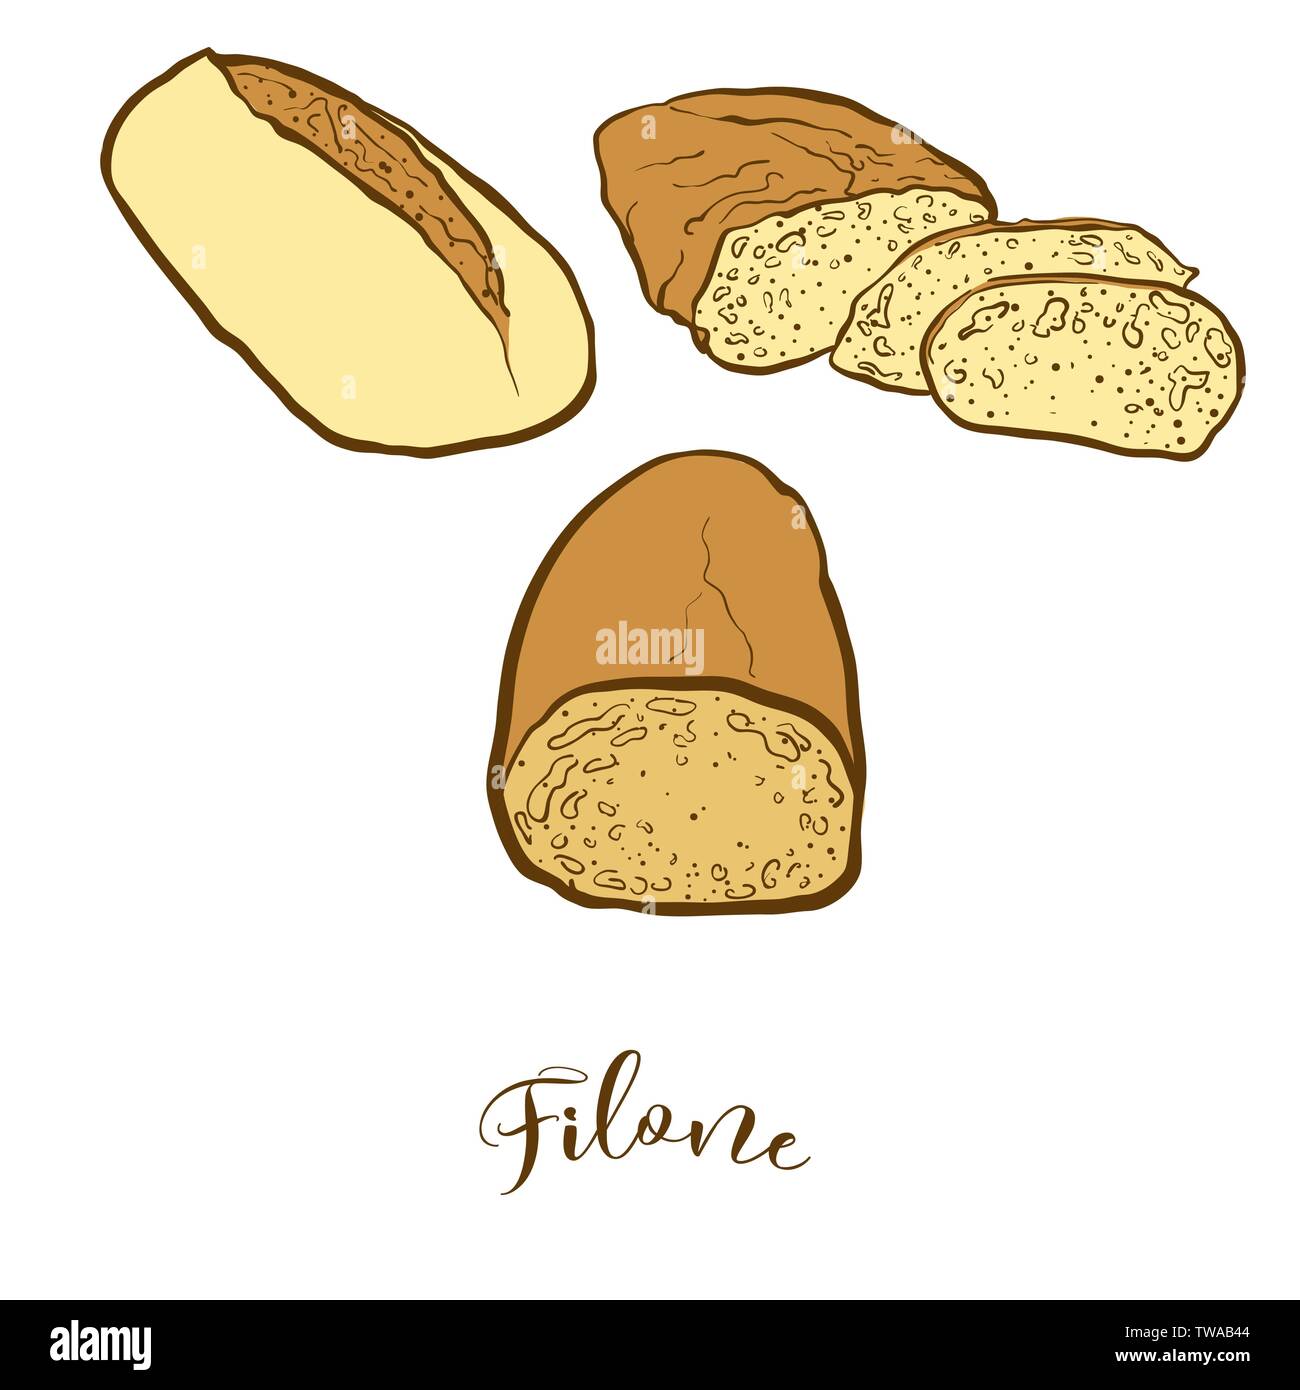 Croquis couleur de pain Filone. De dessin vectoriel, faits de nourriture, habituellement connu en Italie. Illustration du pain de couleur série. Illustration de Vecteur